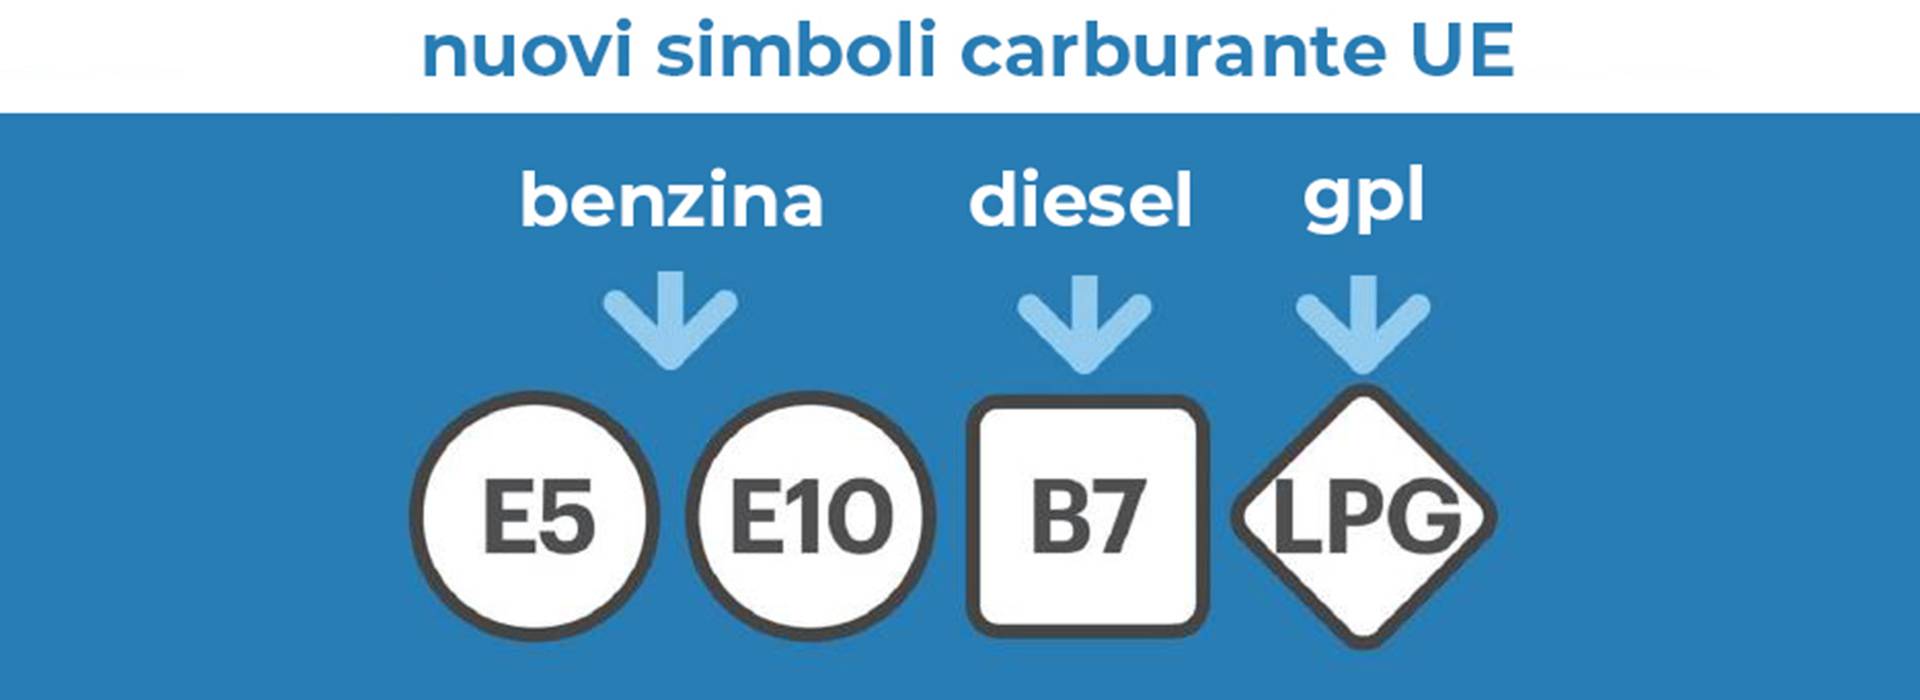 Carburanti, nuove etichette e simboli per benzina, gasolio  e gas